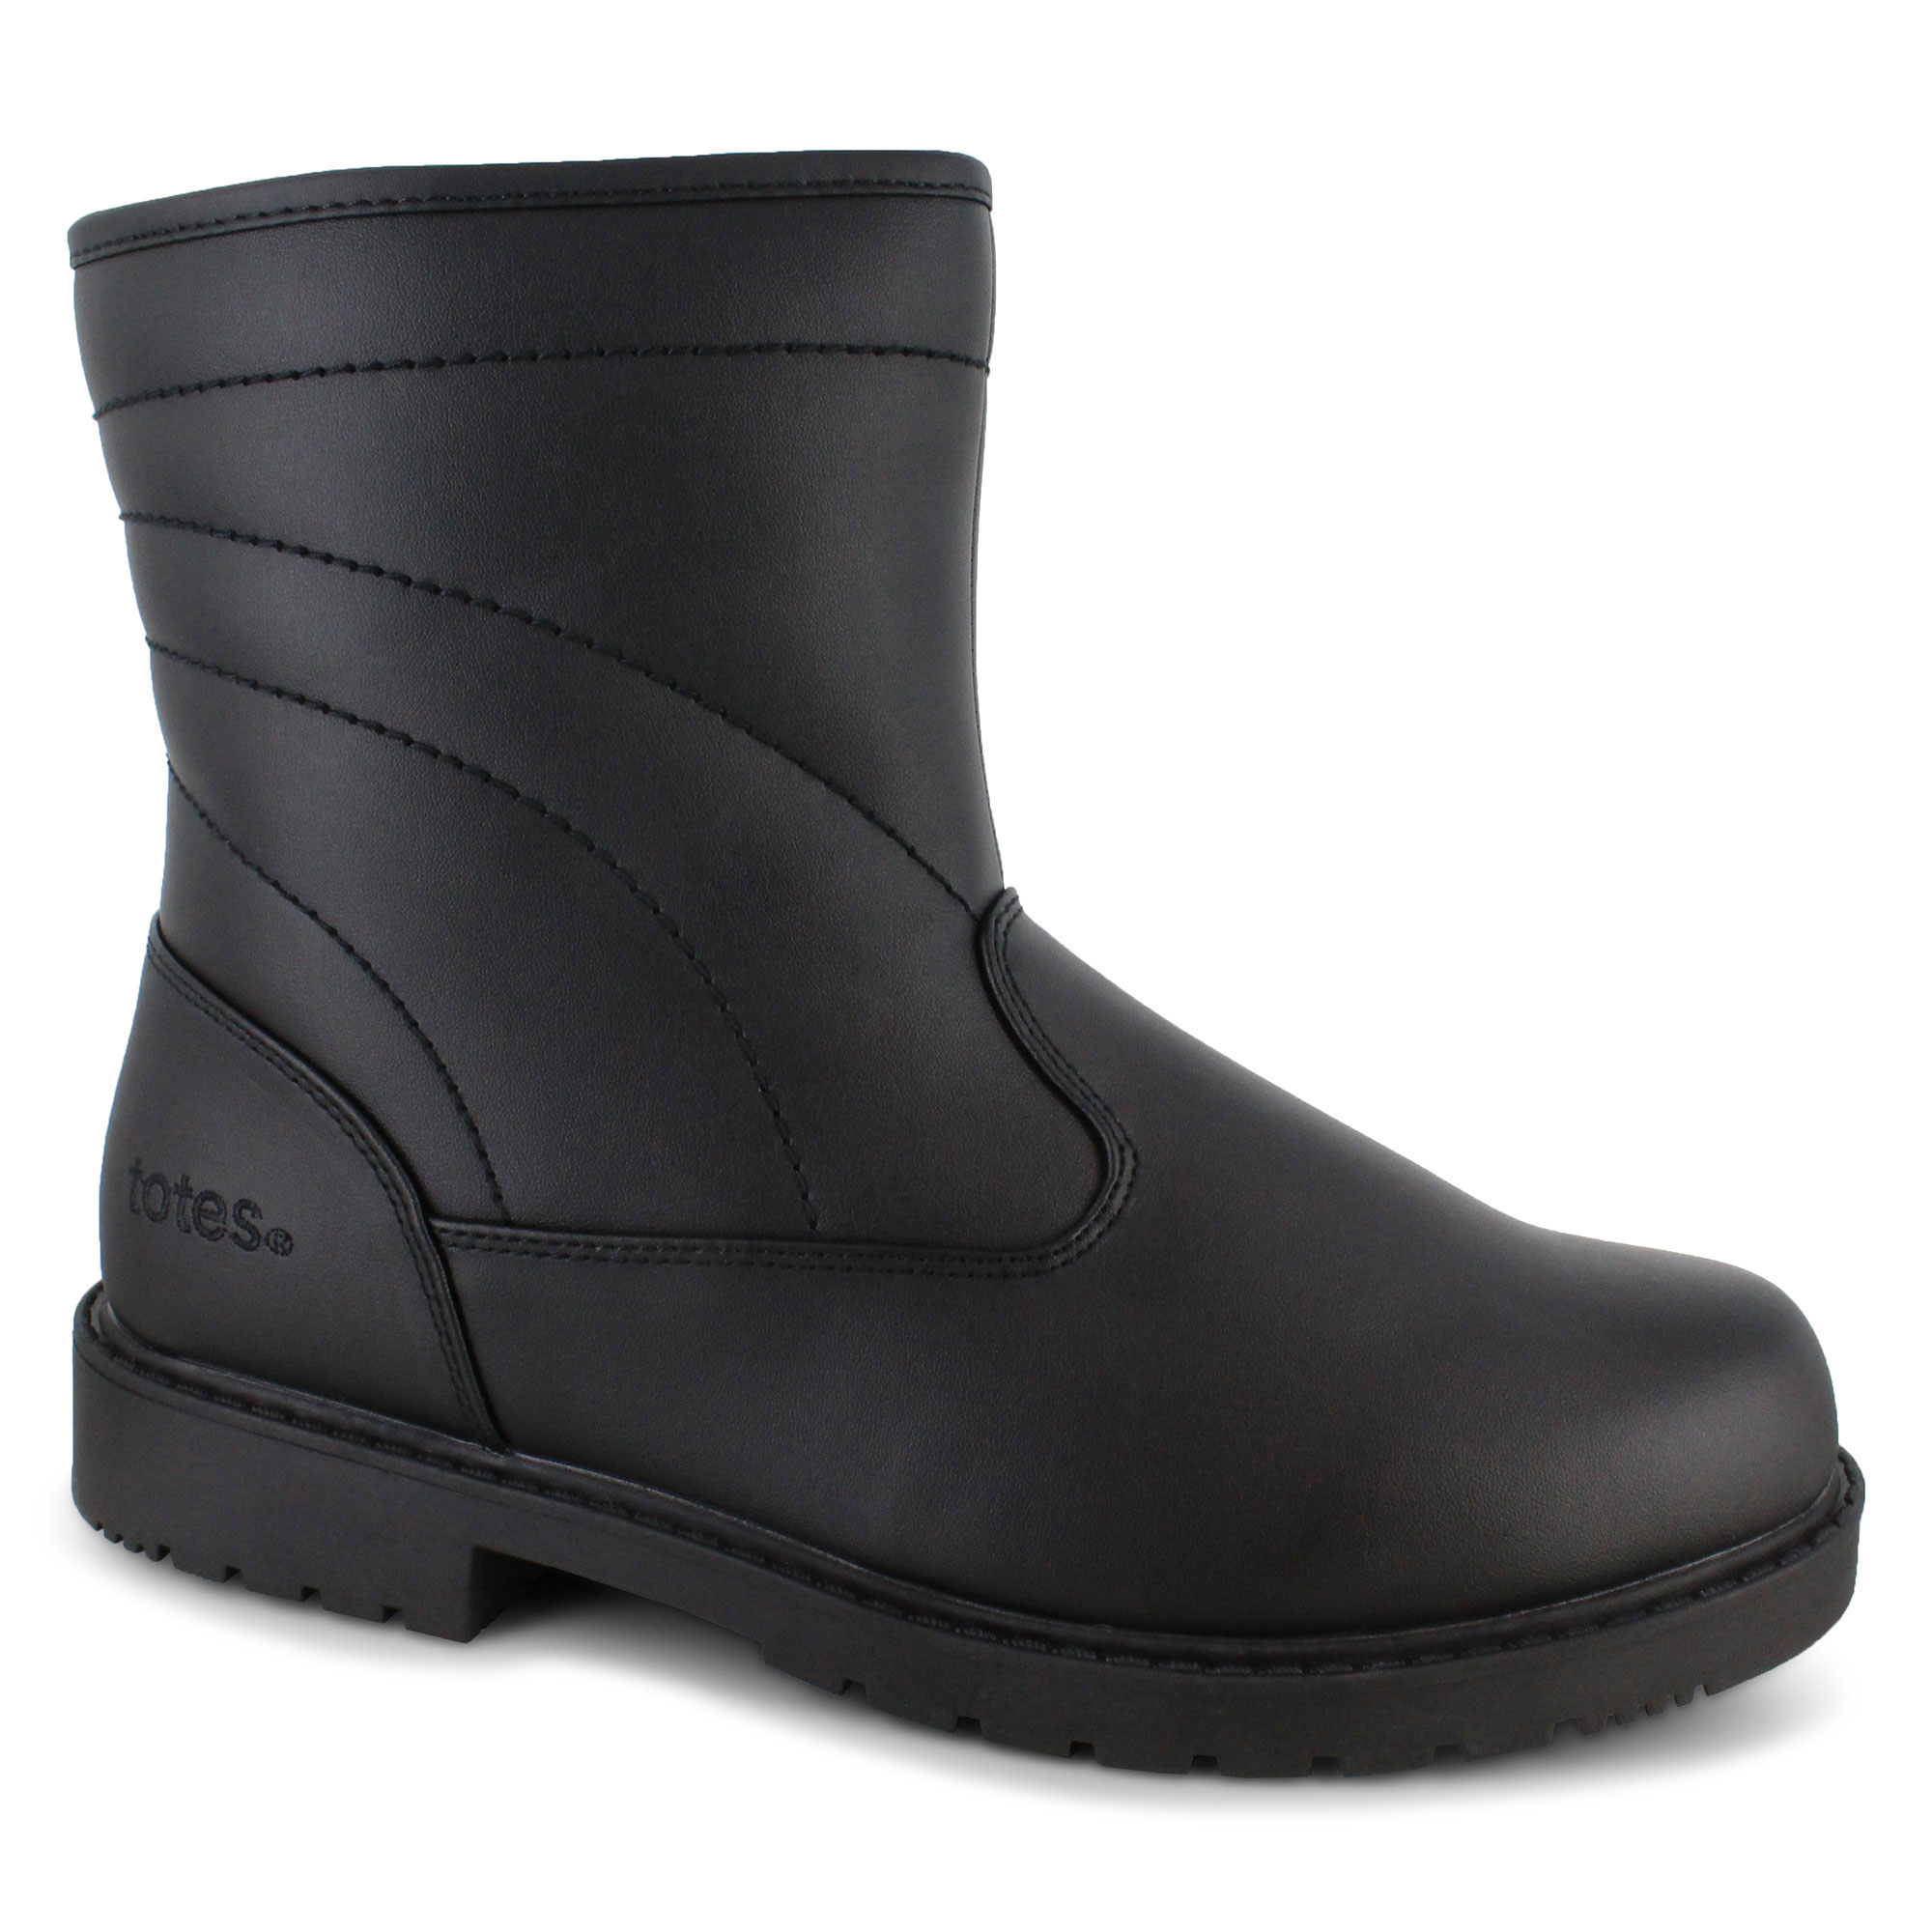 Men's Weather Boots | Shop Now at SHOE SHOW MEGA